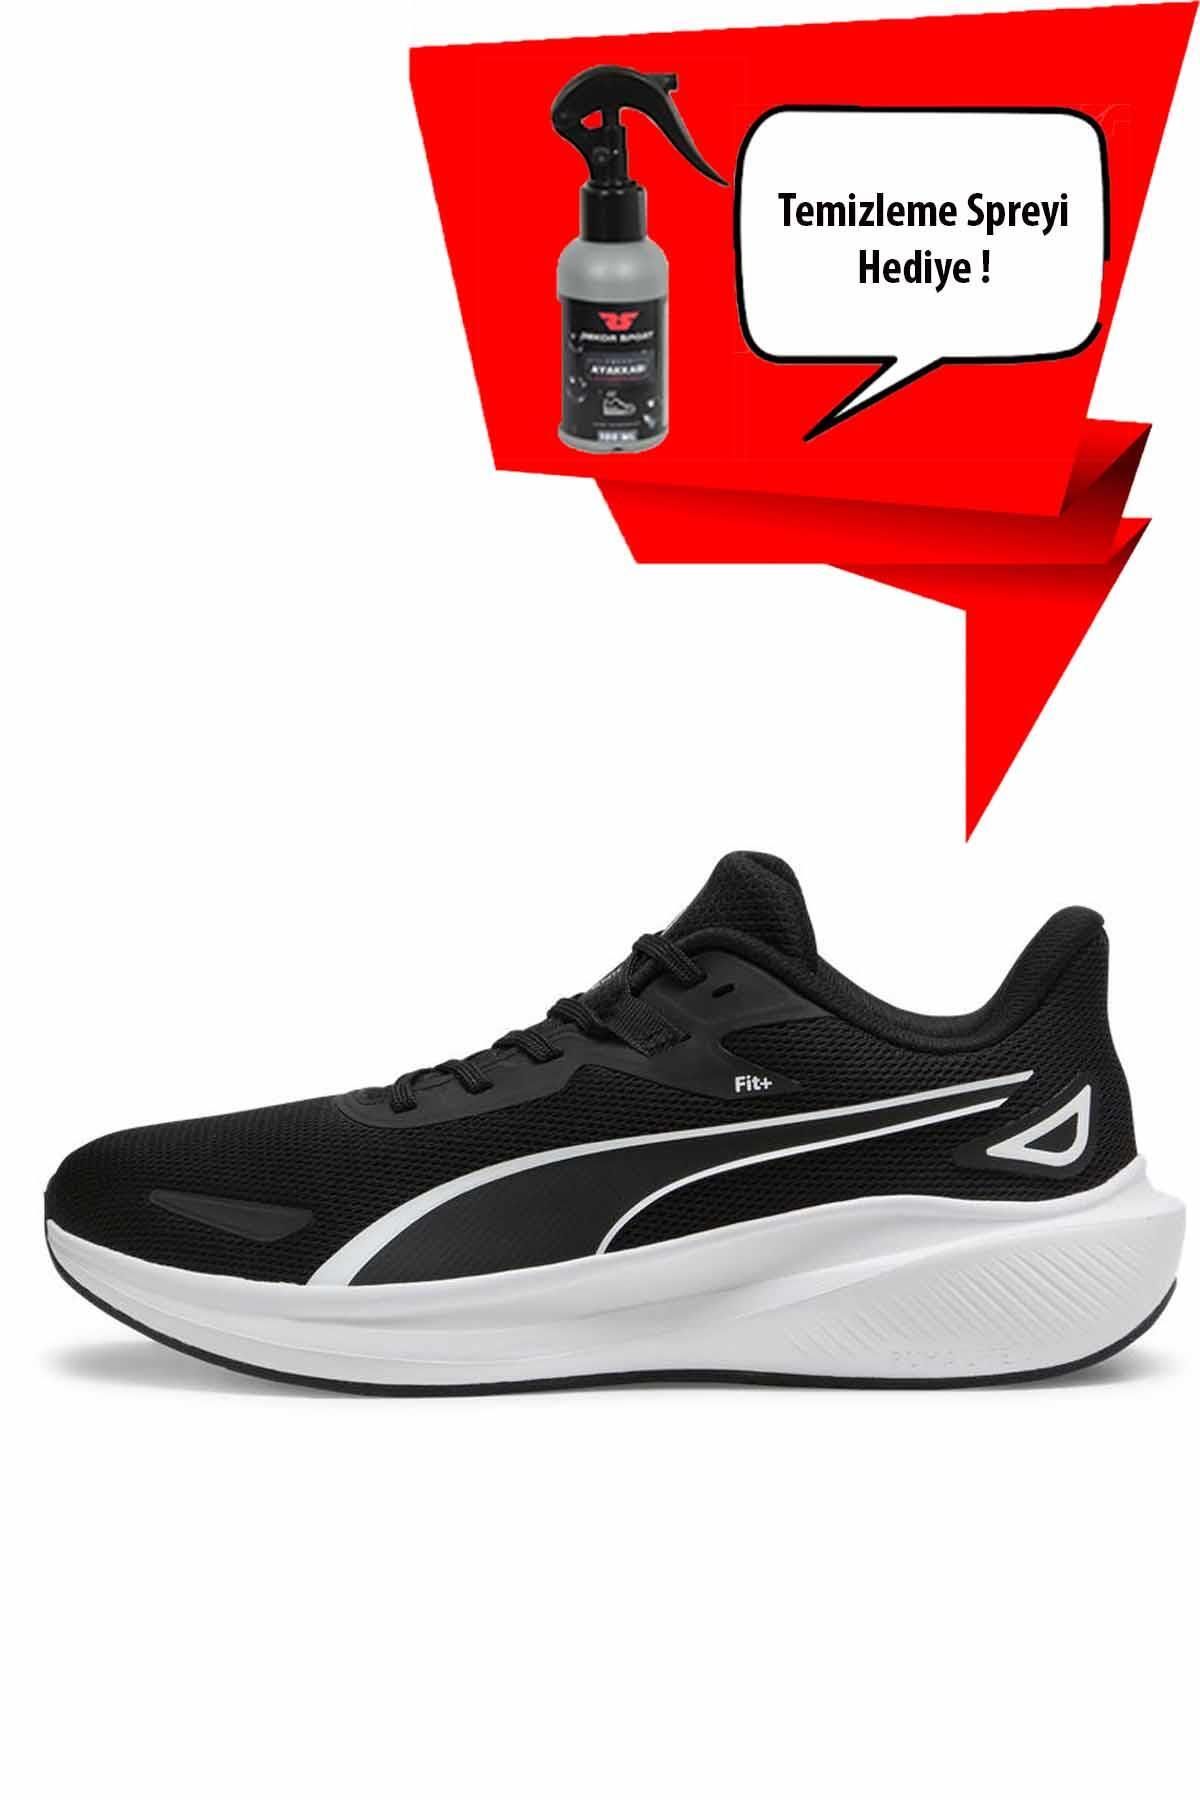 Puma Skyrocket ( Temizleme Spreyi Hediyeli ) Unisex Sneaker Ayakkabı 379437-01-1 Siyah